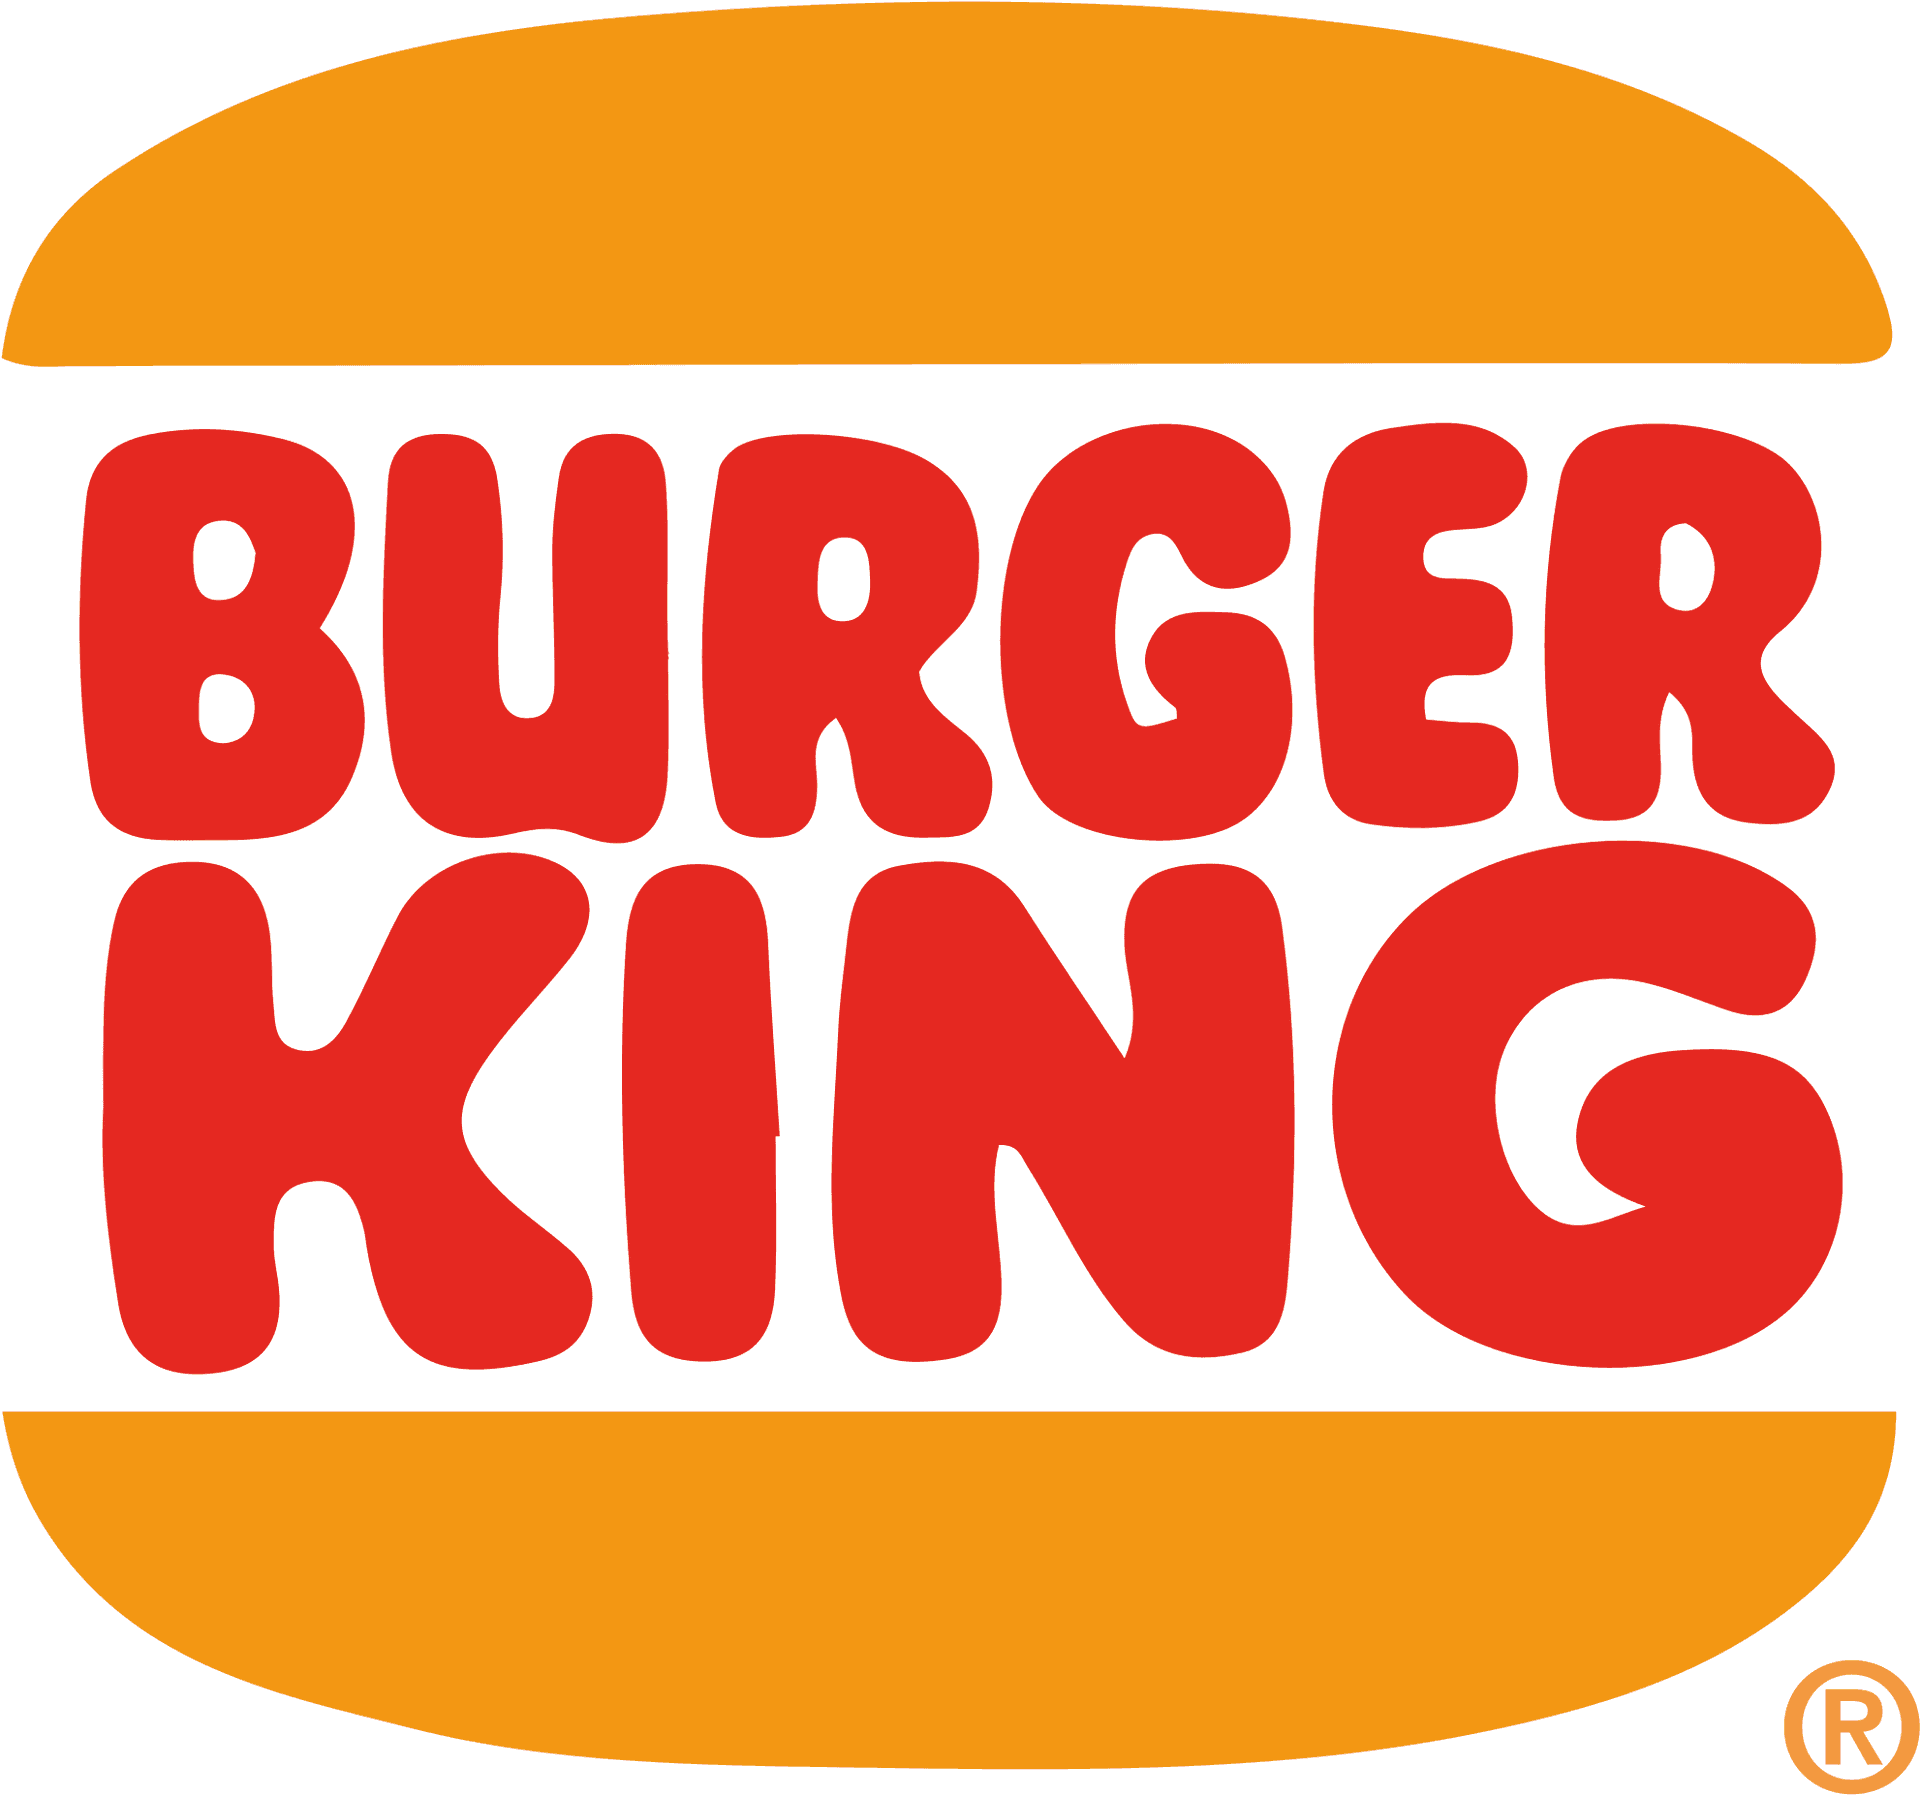 Burger King Logo PNG